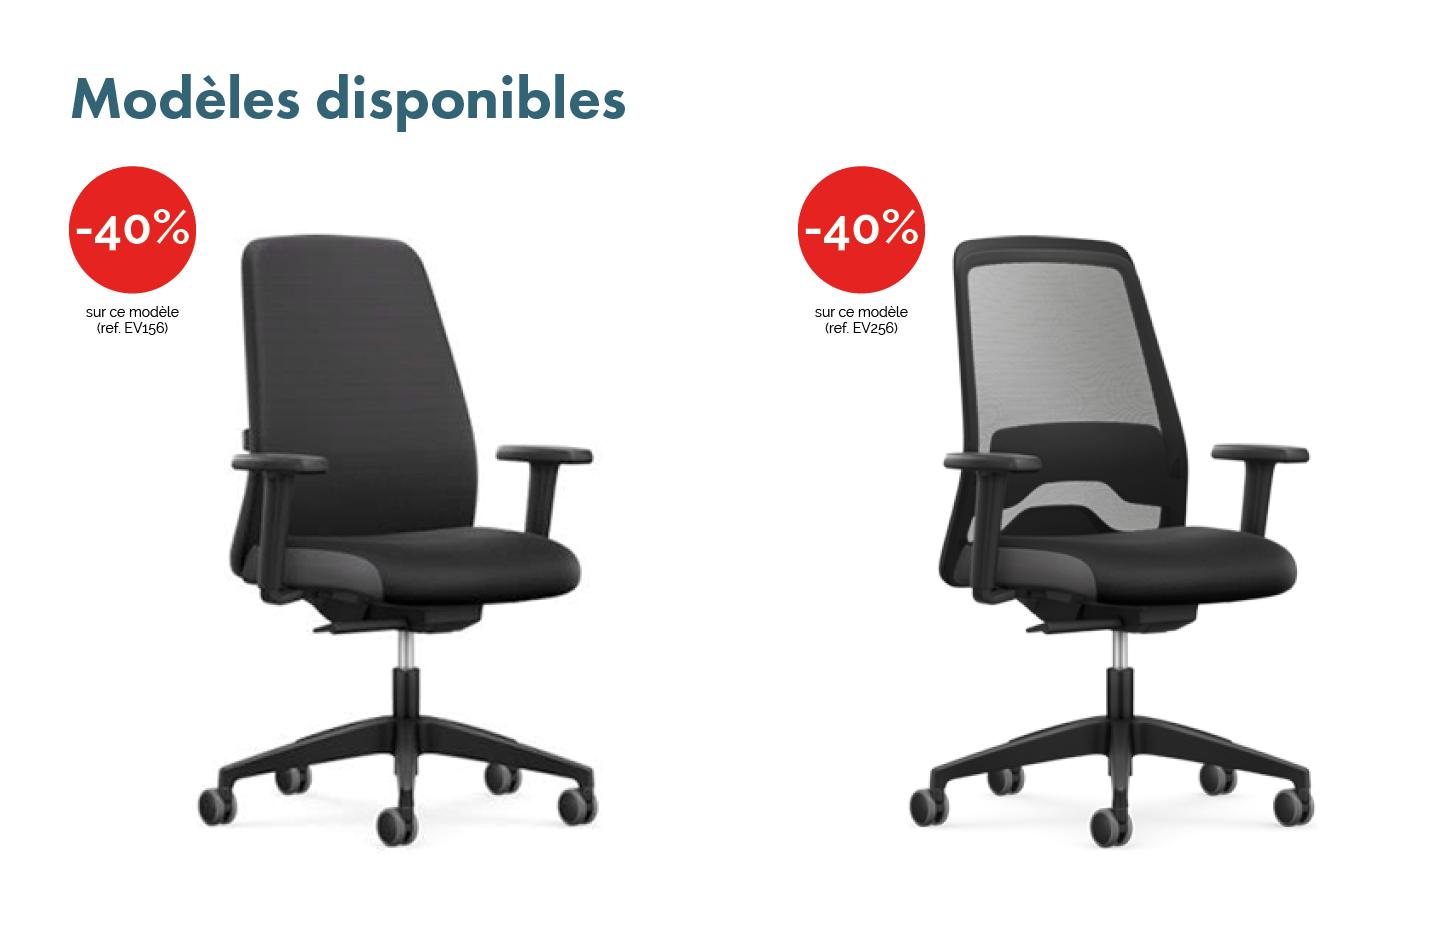 Siège et fauteuil de bureau, dossier rembourré ou résille, gamme Everyis1 - France Bureau